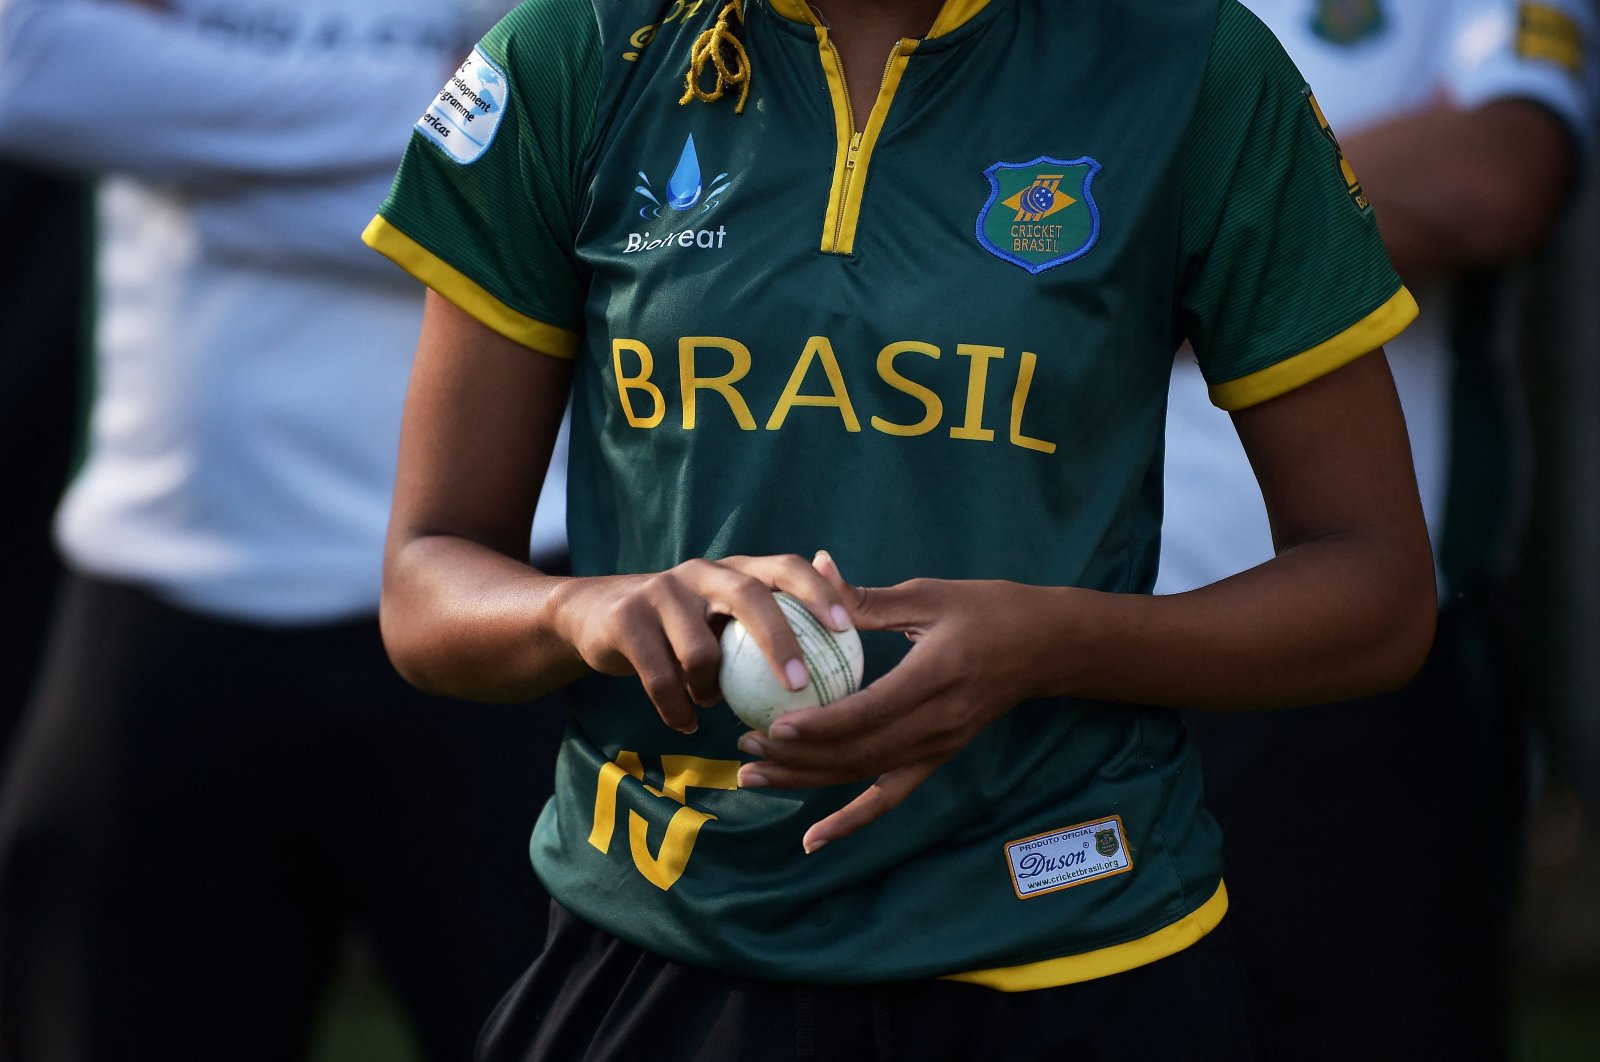 Gol baru: Kriket wanita menjadi profesional di Brasil yang gila sepak bola